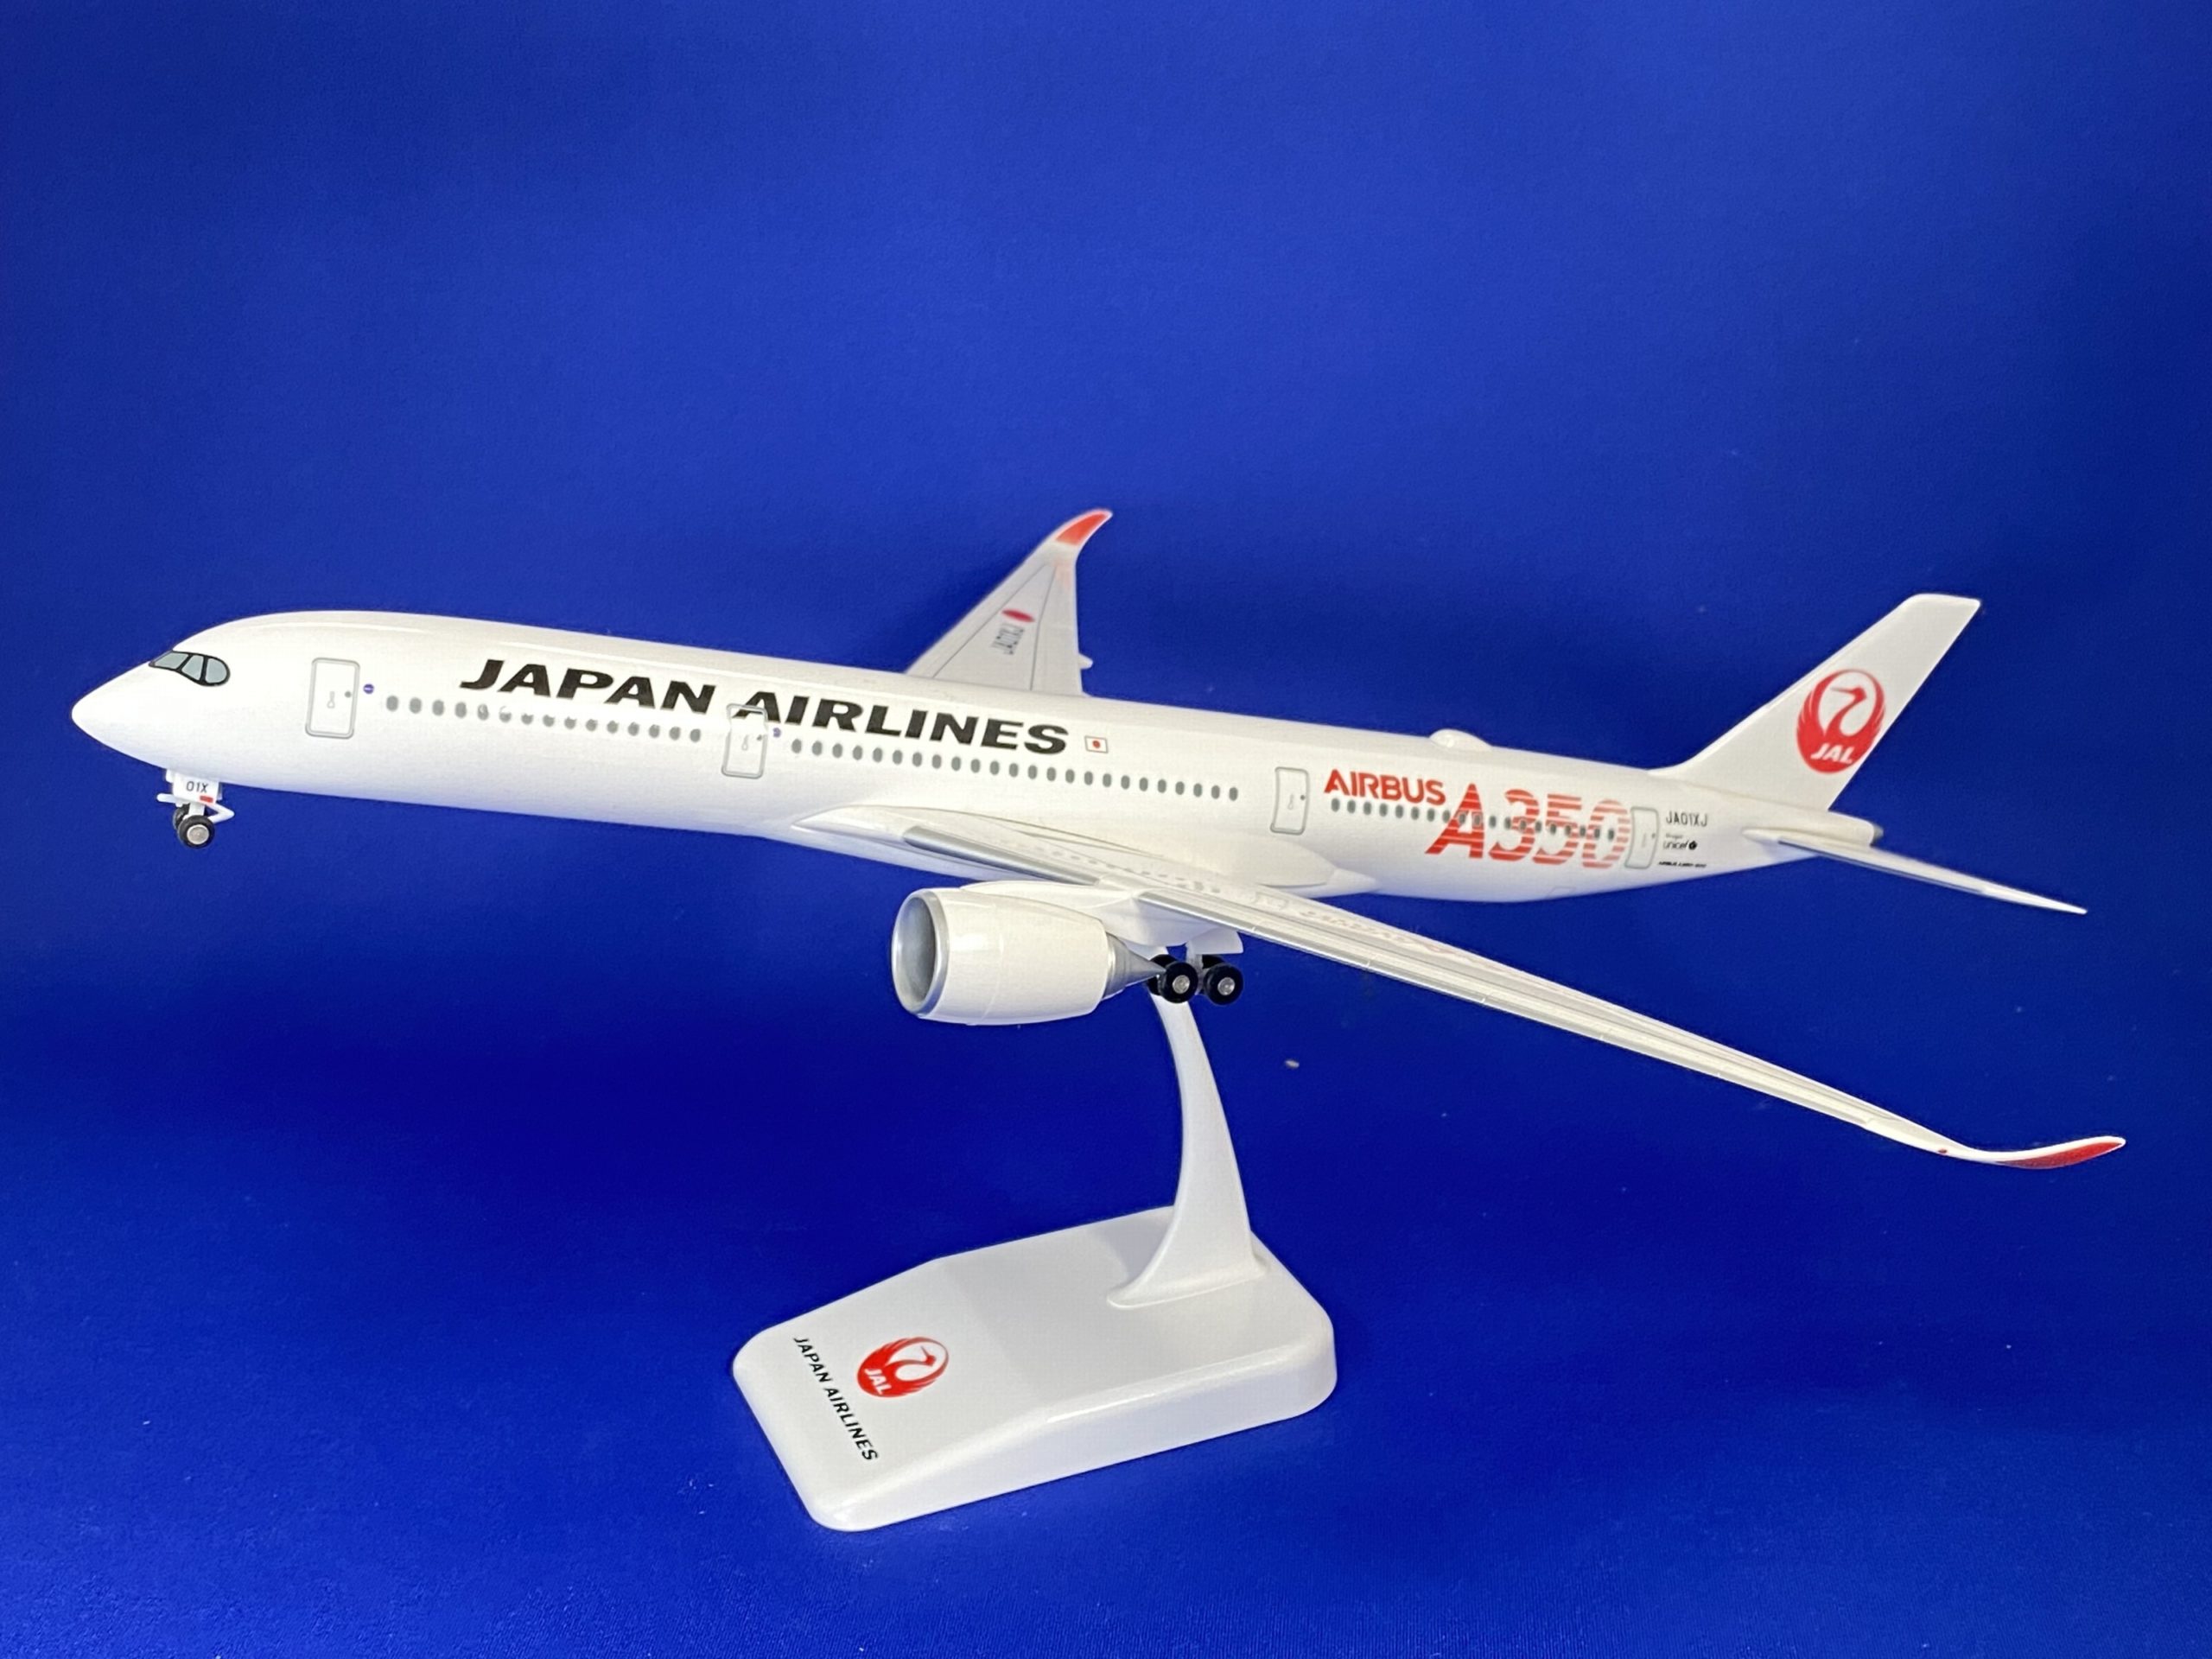 エアバス A350-900 JAL 日本航空 3号機(緑色A350ロゴ) JA03XJ 200 